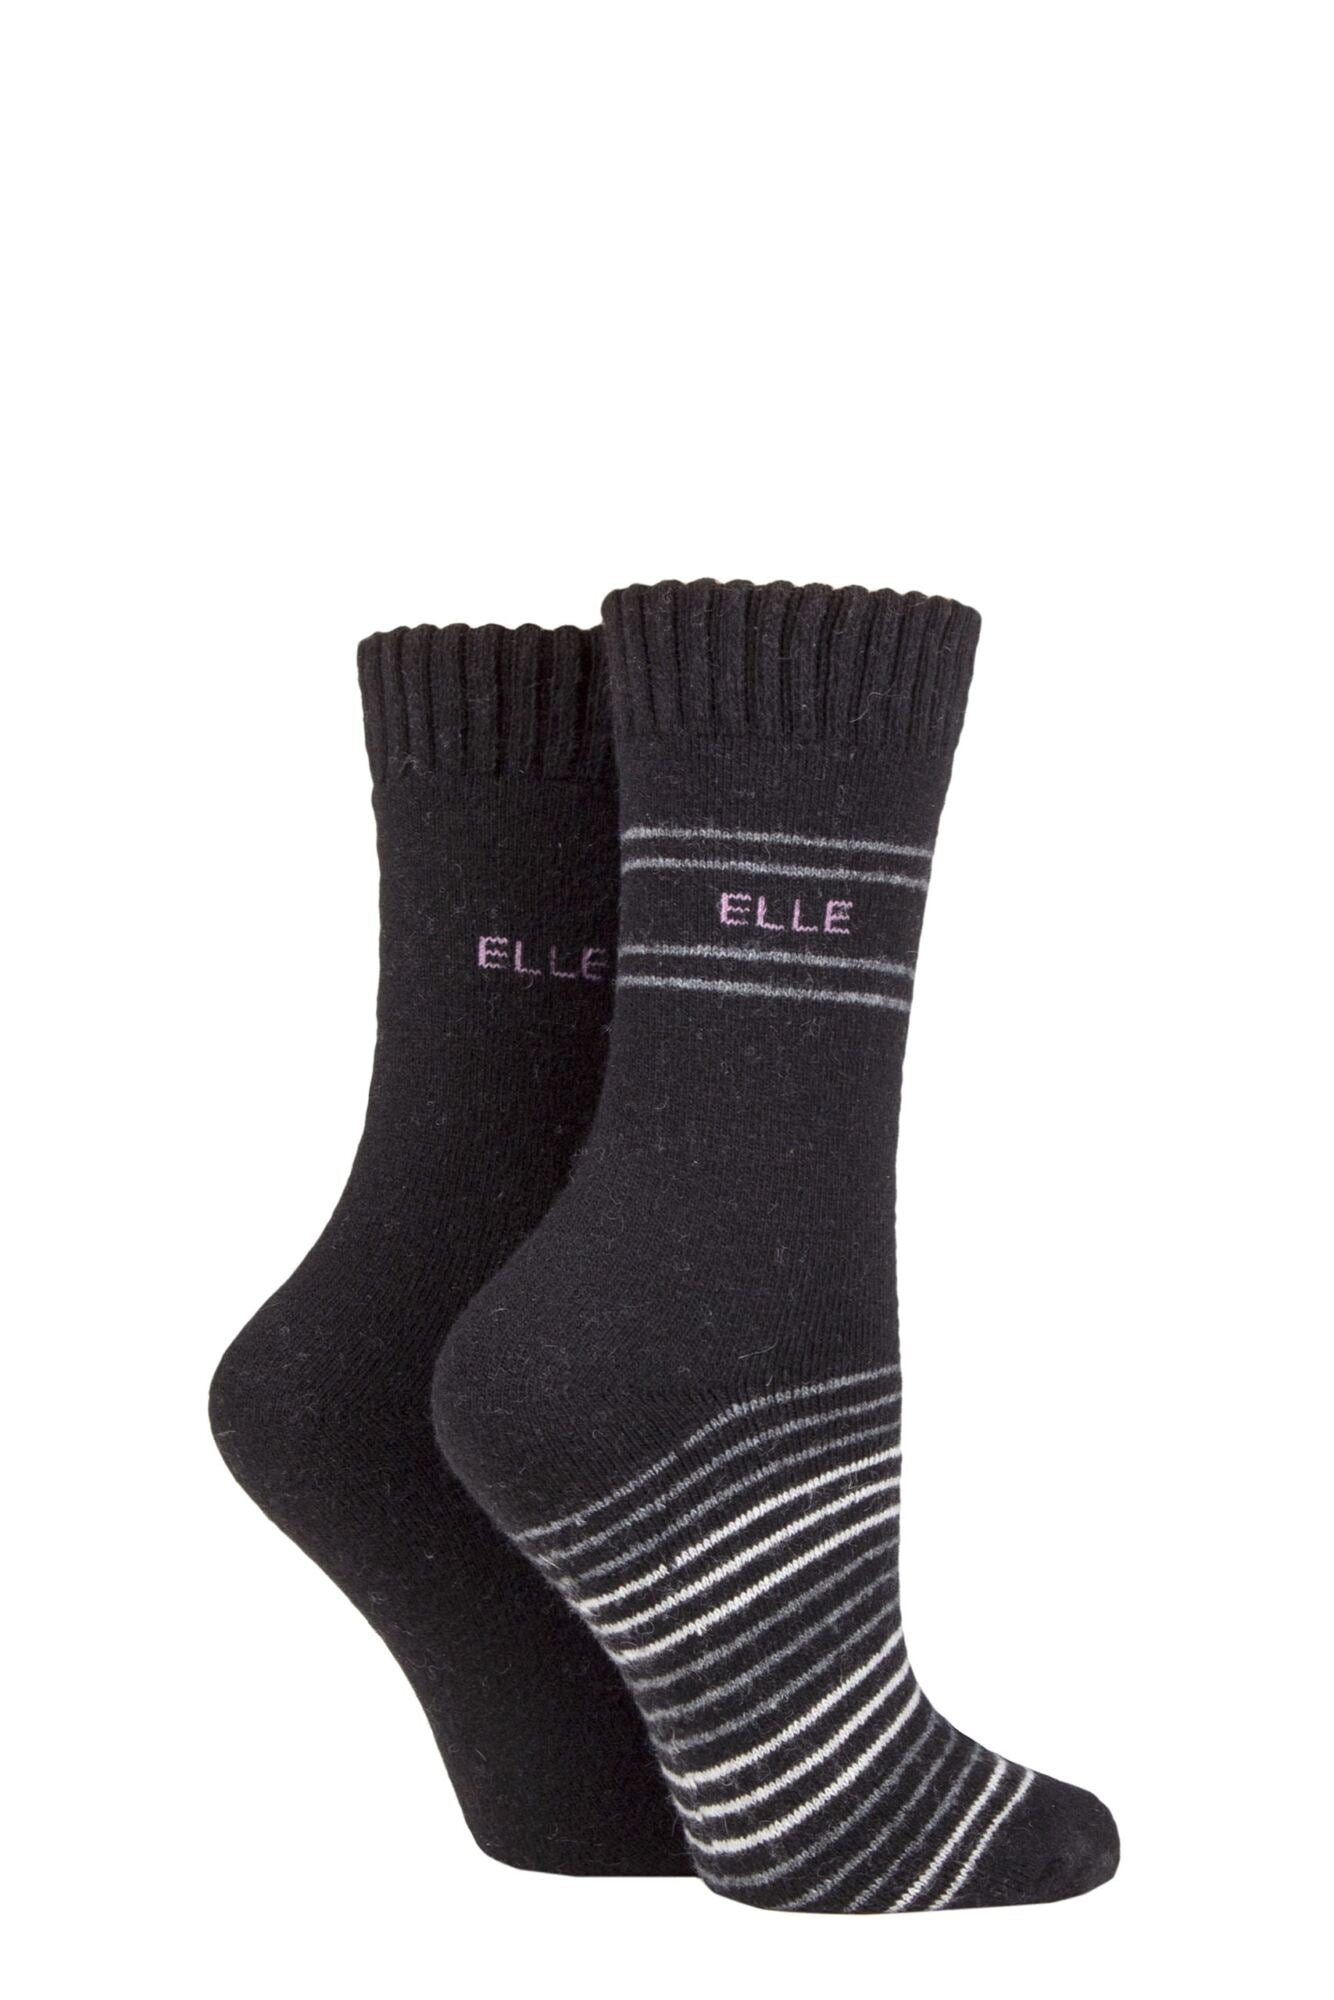 Elle-Ladies Wool Blend Boot Socks-2 Pair Pack-Black